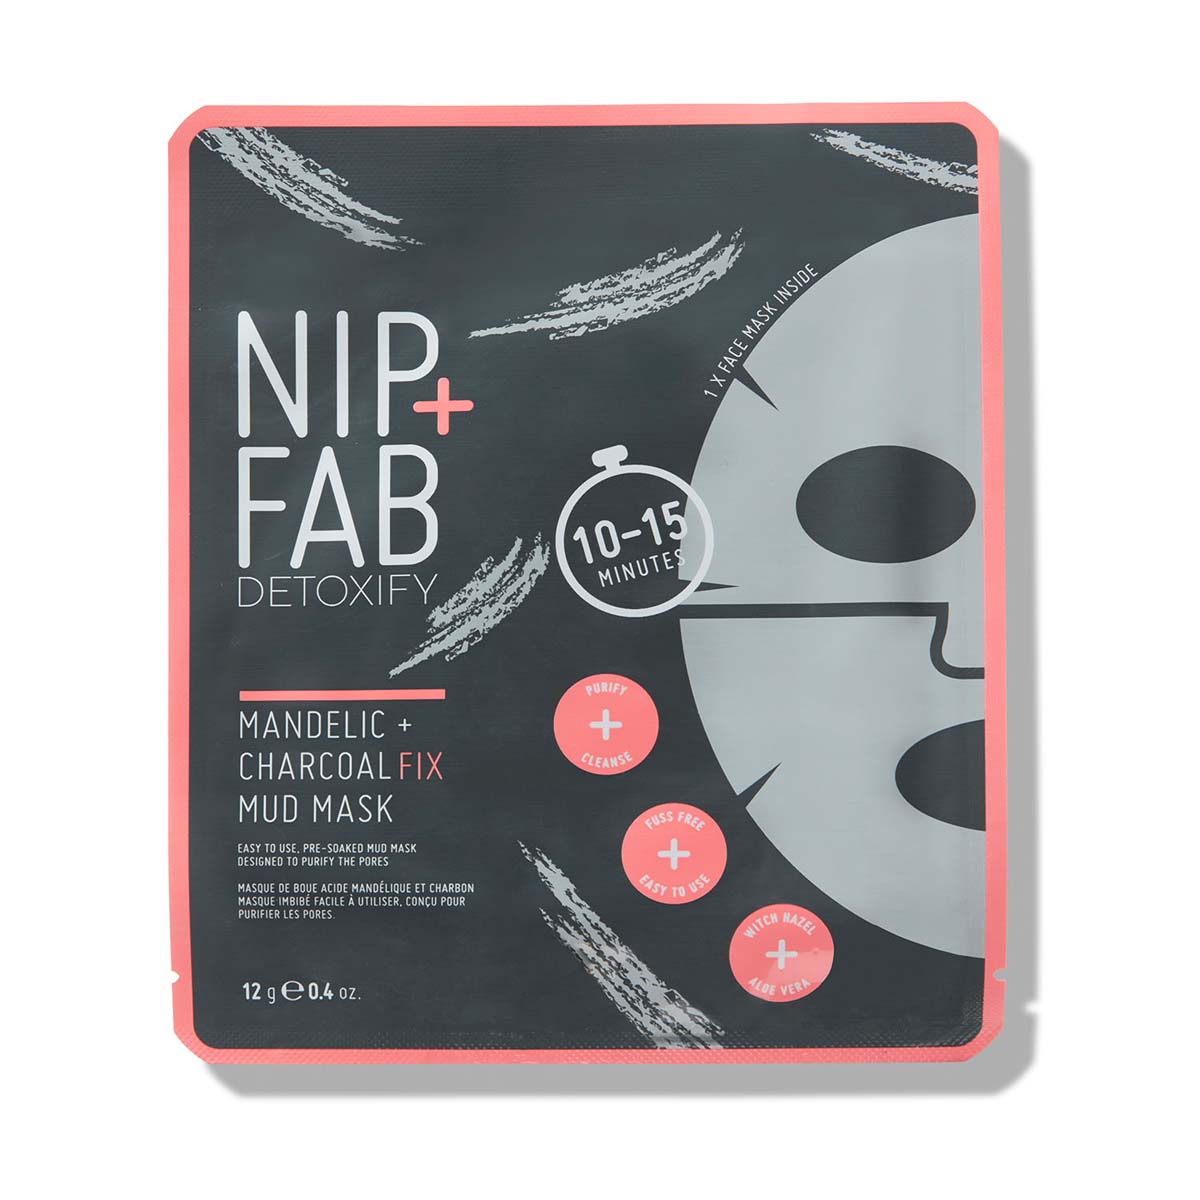 NIP+FAB 木炭扁桃酸修护清洁面膜 12g